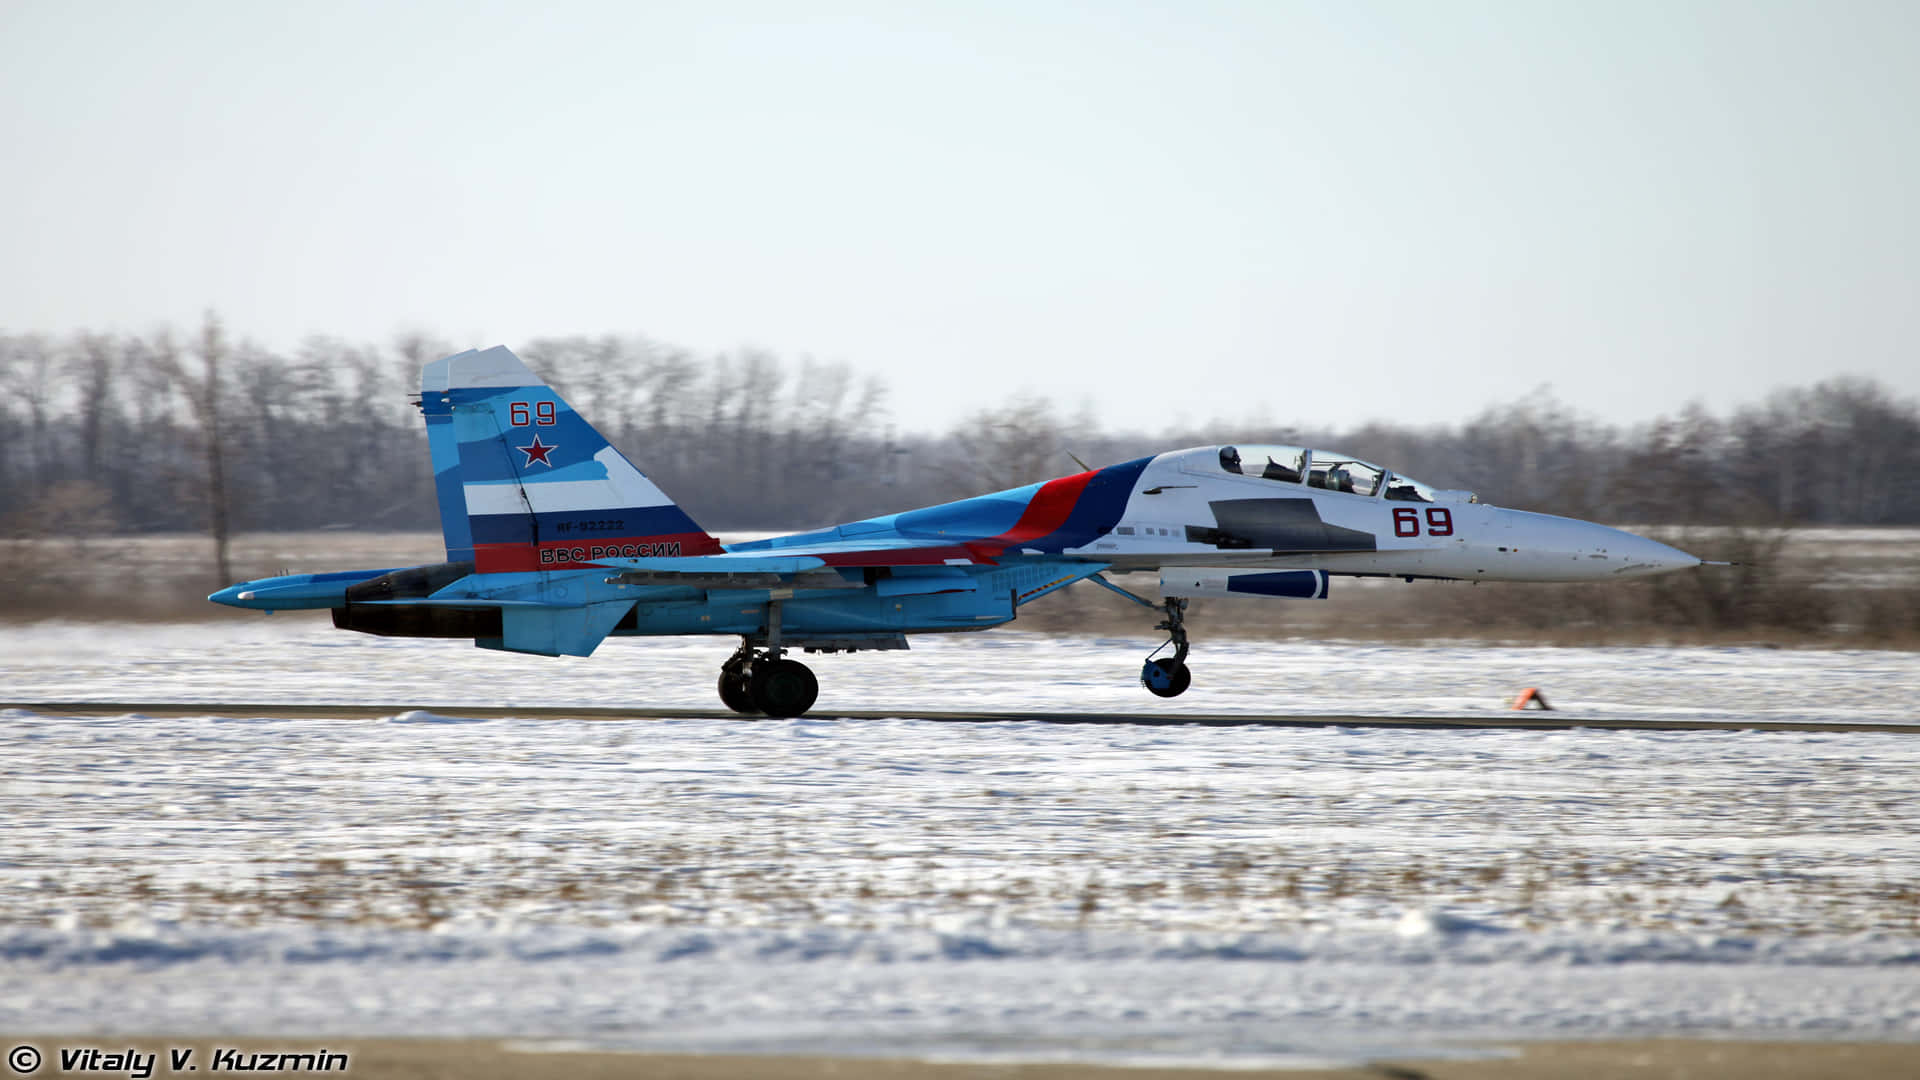 1080p Jumbo Jets Sukhoi Su-30 Launching Background